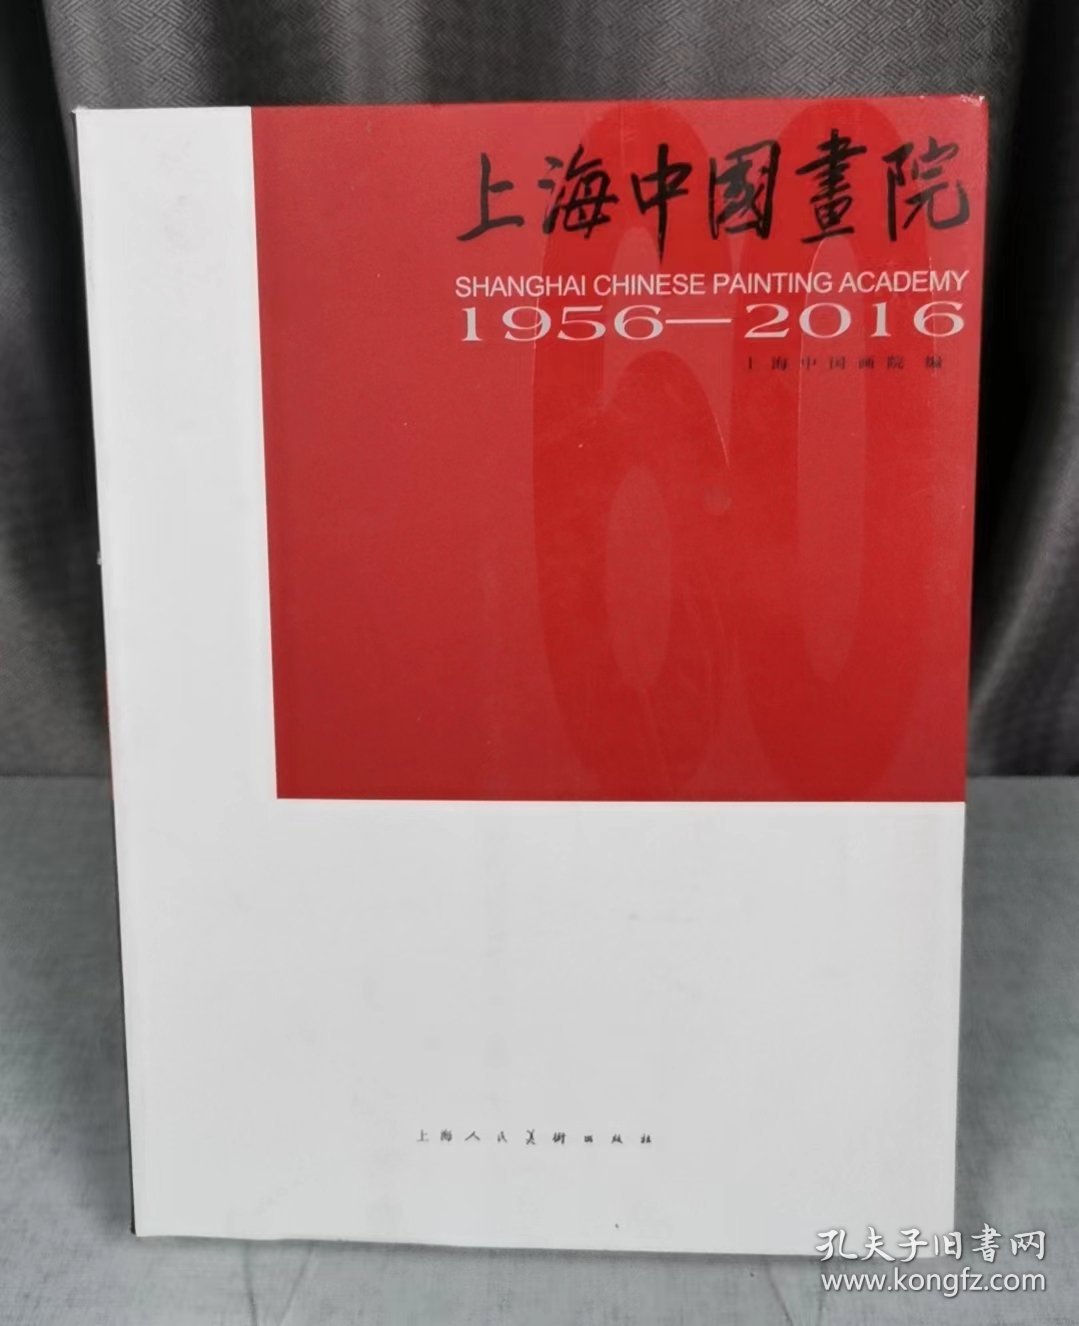 上海中国画院:1956-2016:1956-2016